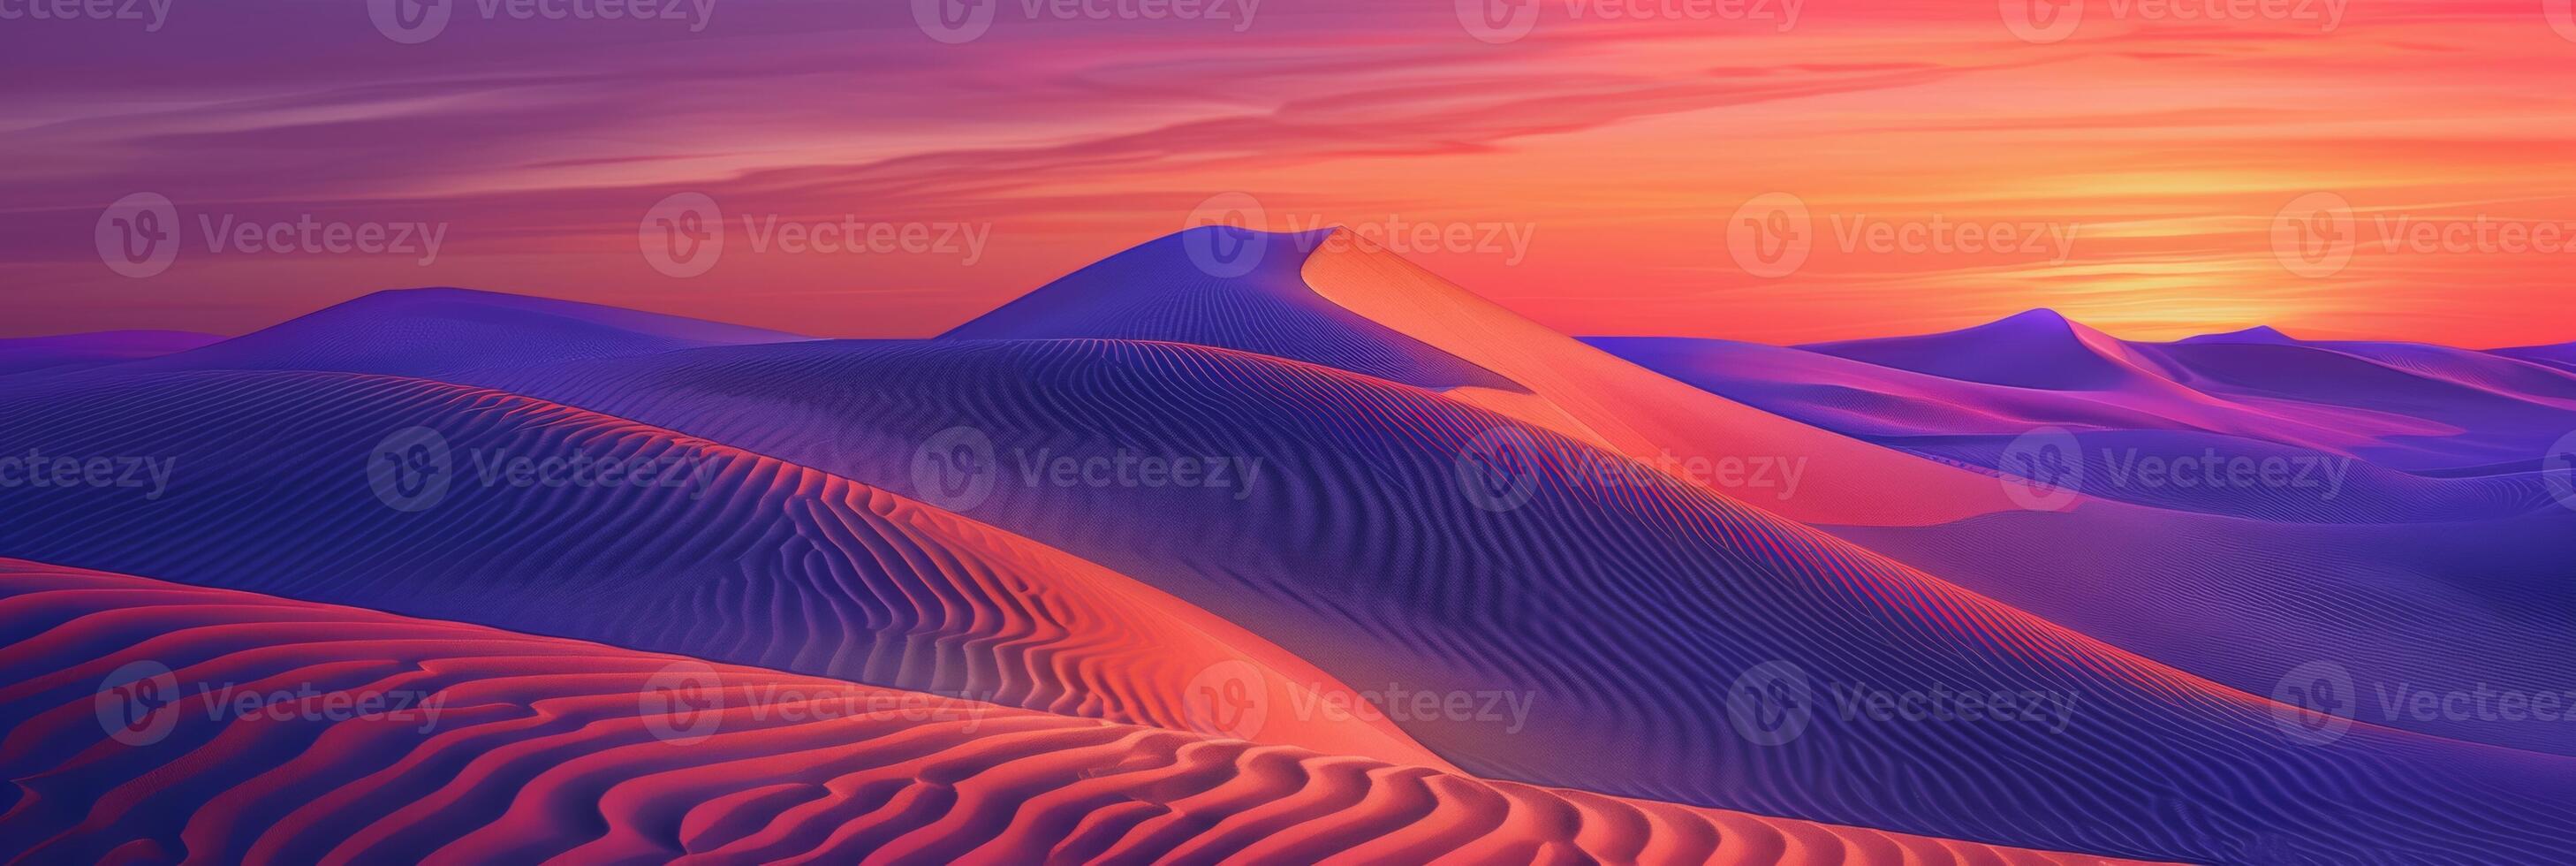 nascer do sol tintas incomum fractal padrões em ondulado deserto areia dunas com uma vibrante laranja e roxa gradiente céu Como pano de fundo foto